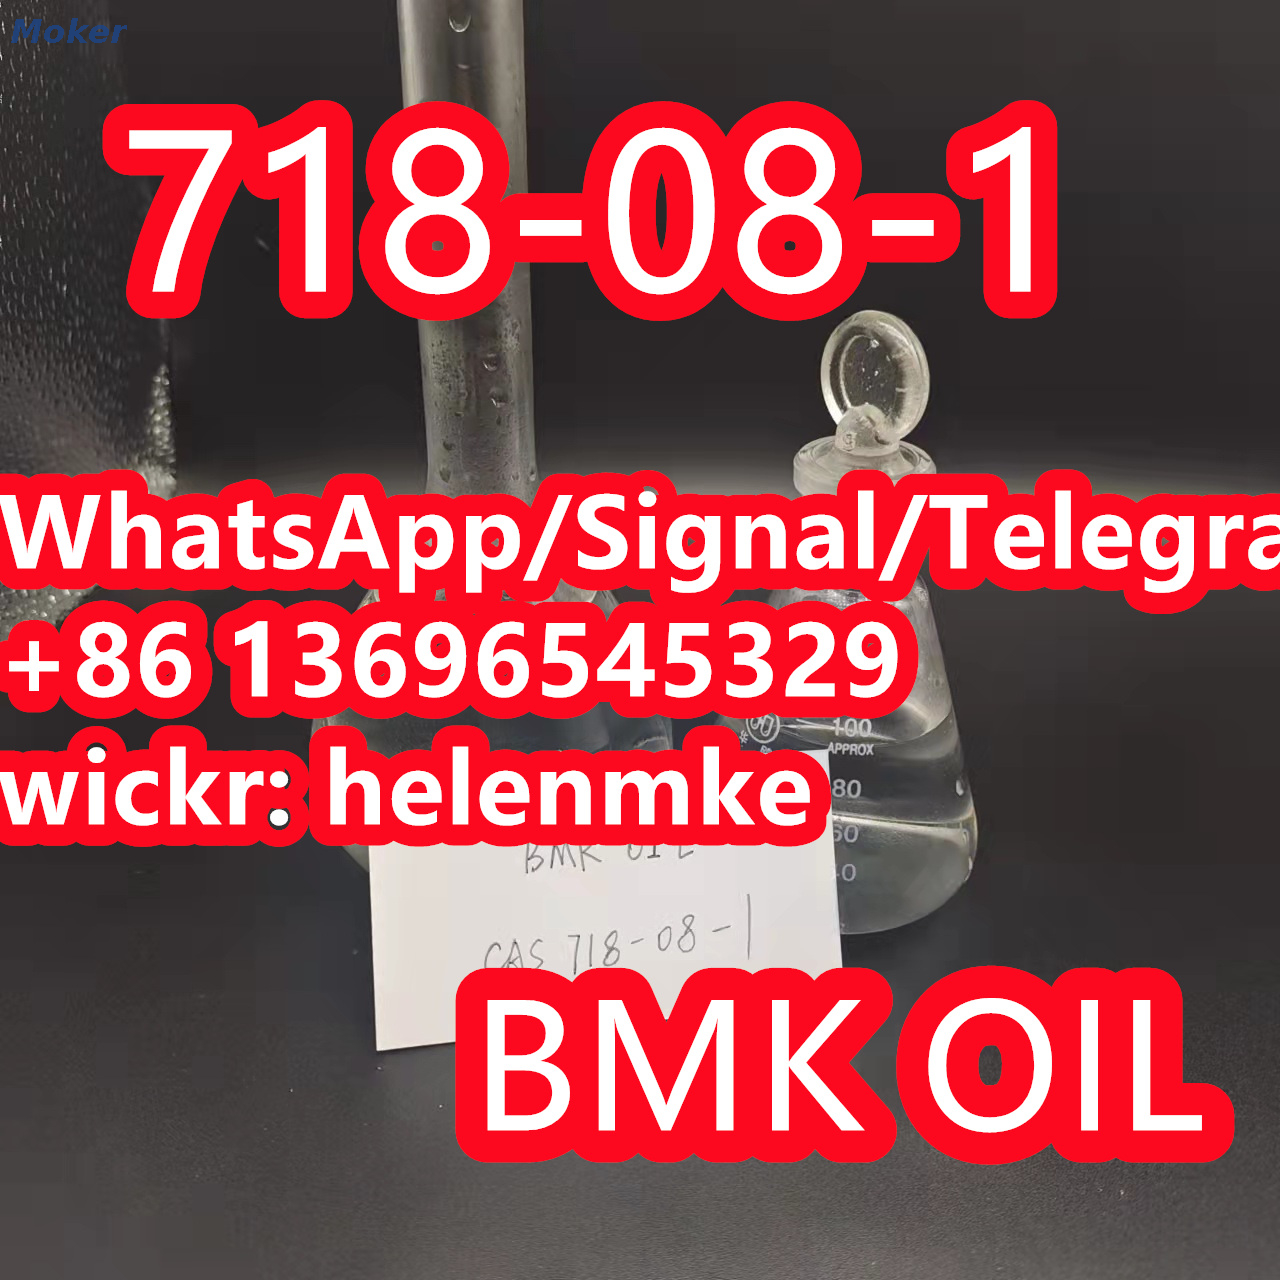 Hochwertiges Bmk-Öl CAS 718-08-1 mit niedrigem Preis und sichere Lieferung